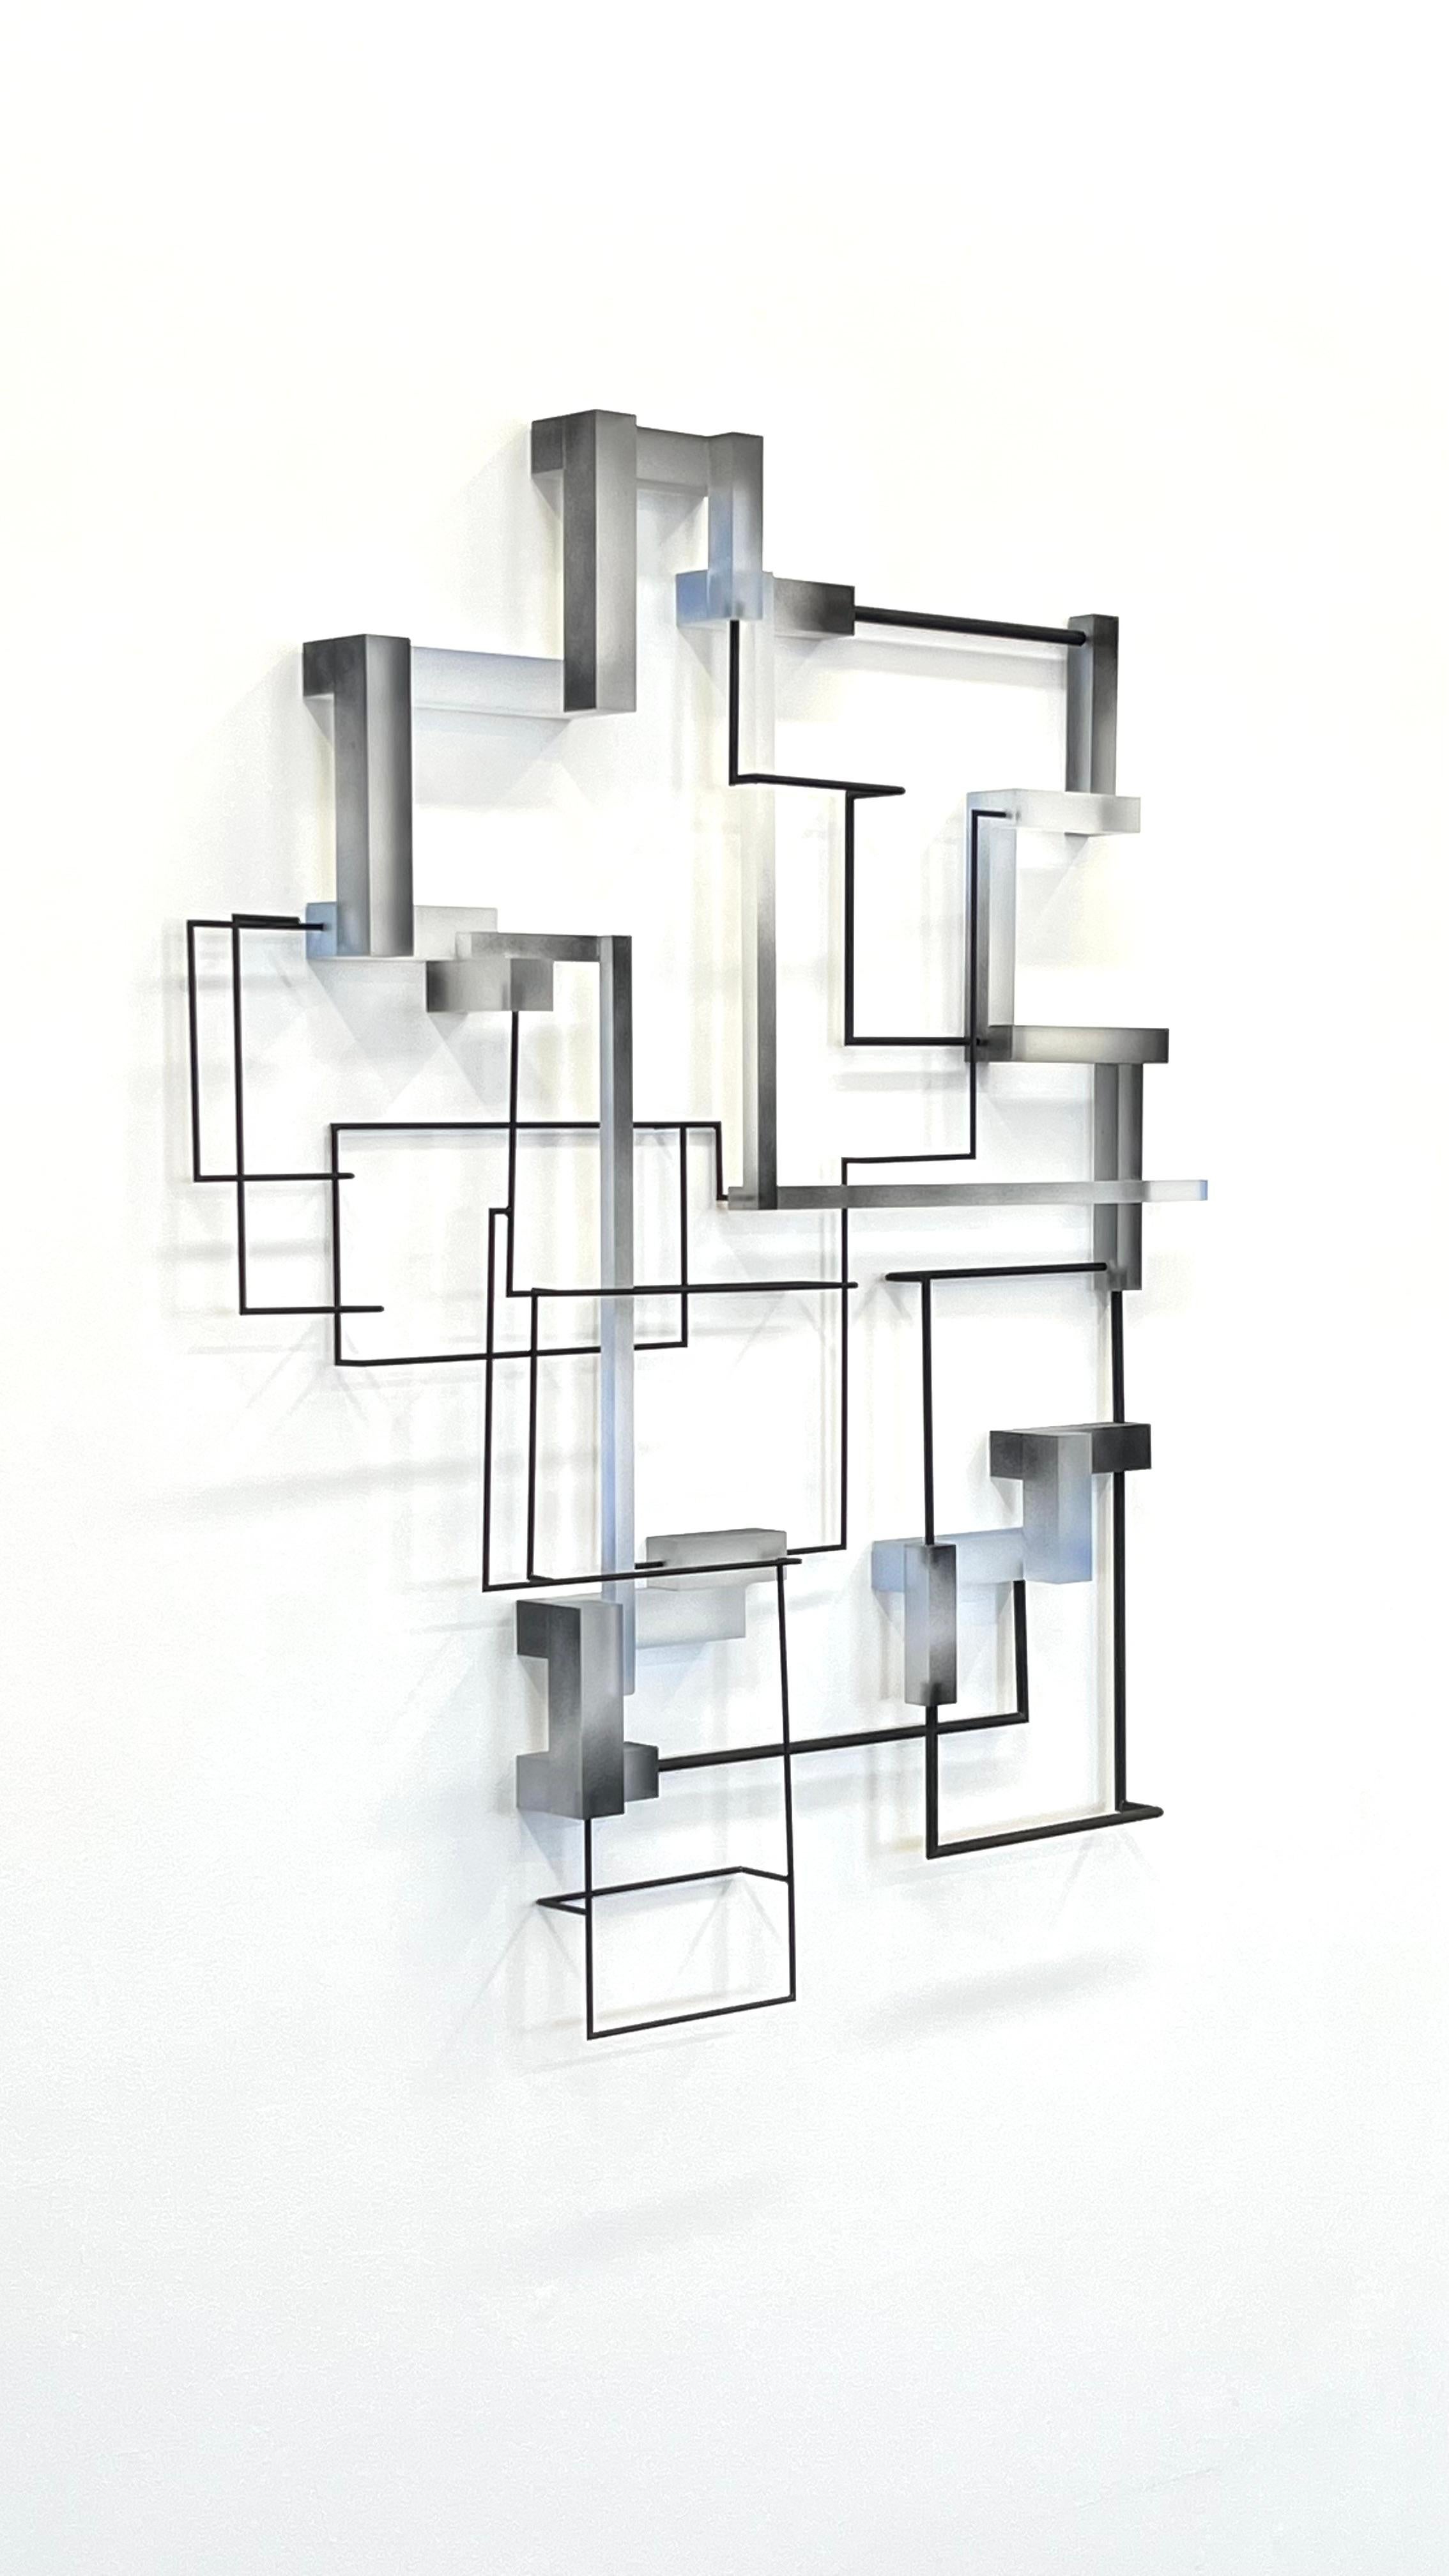 Vanguard: zeitgenössische moderne abstrakte geometrische Skulptur – Sculpture von Greg Chann